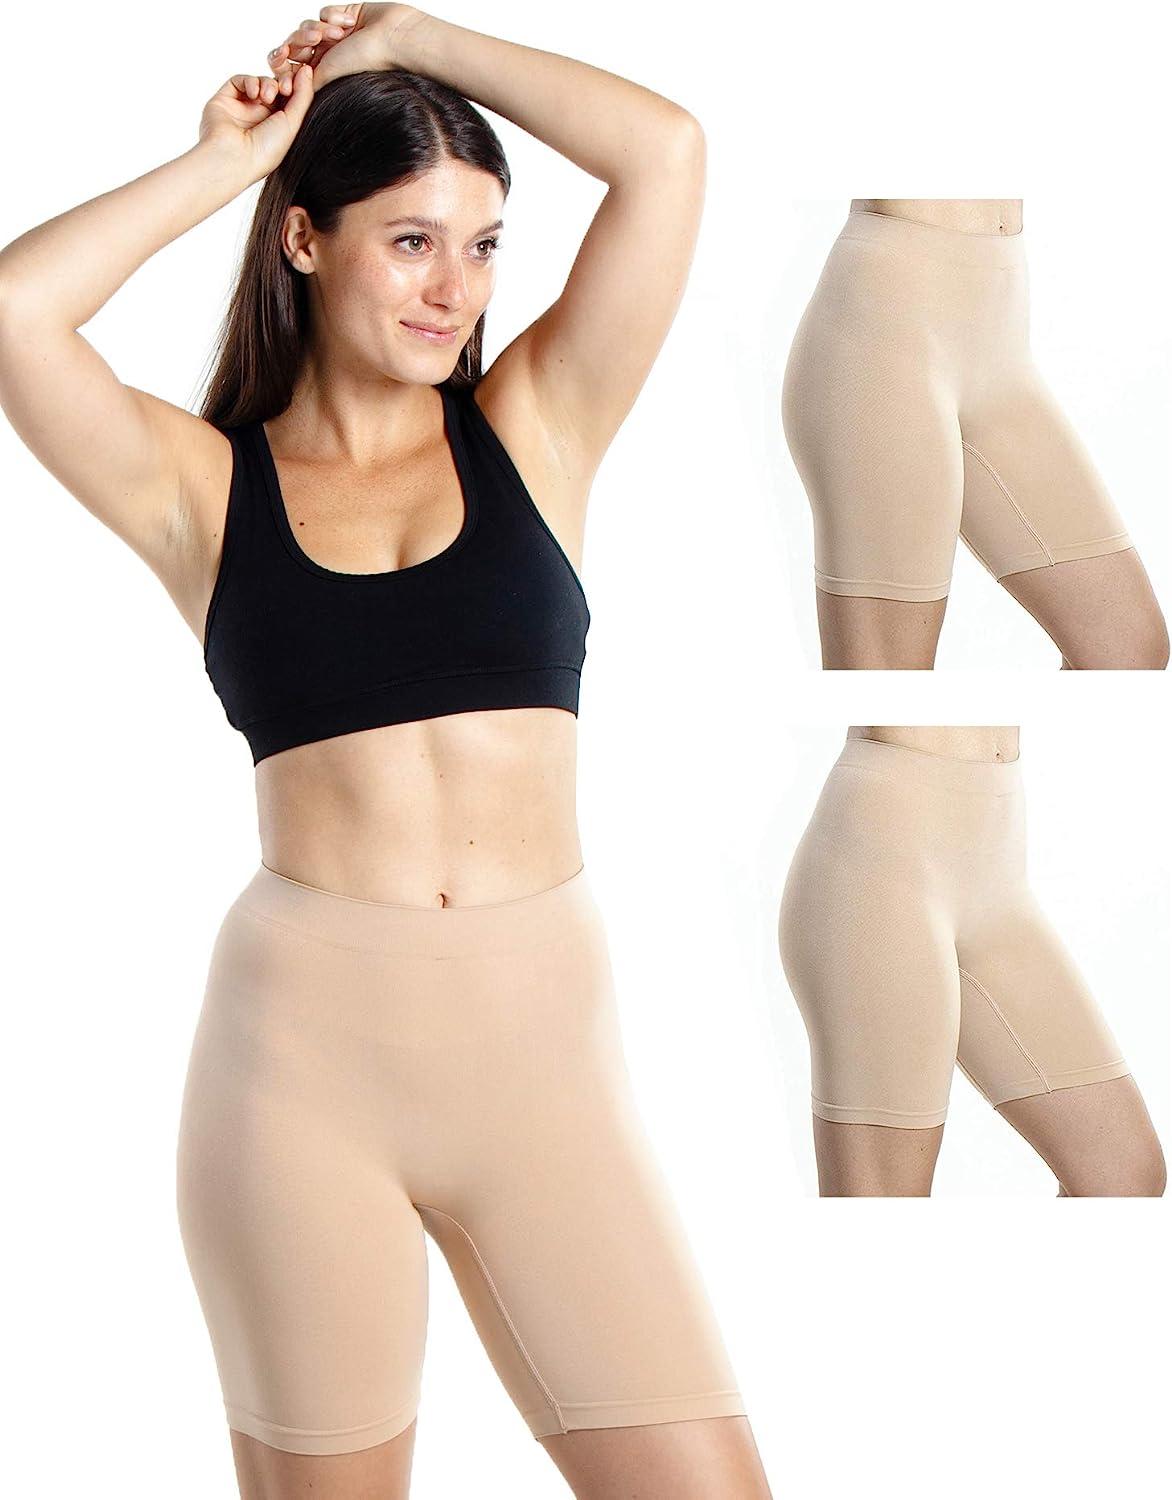 Emprella Cotton Underwear Women 10 Thong Pack - No Show